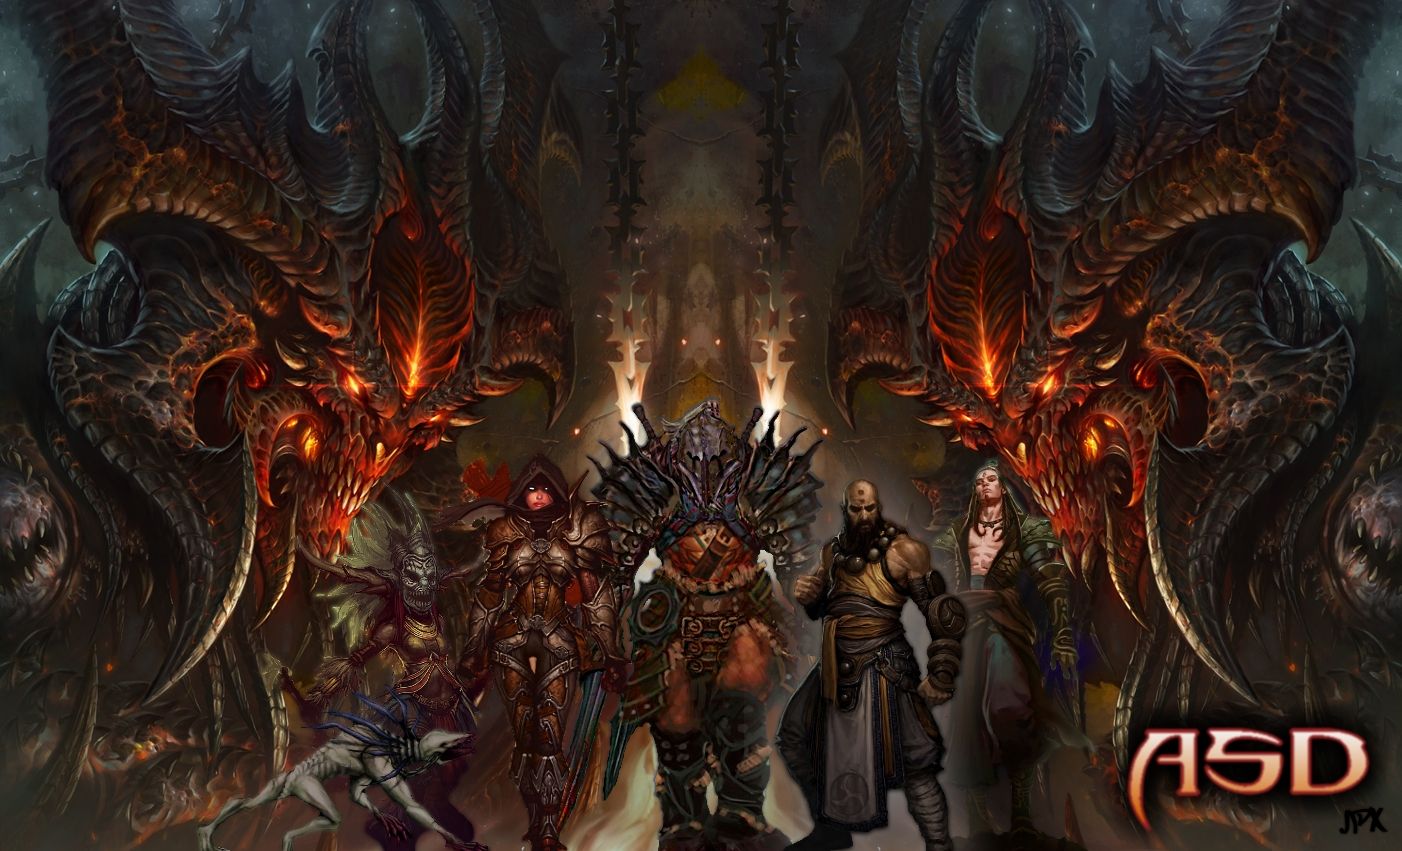 Diablo III Wallpaper. Diablo 3 Wallpaper